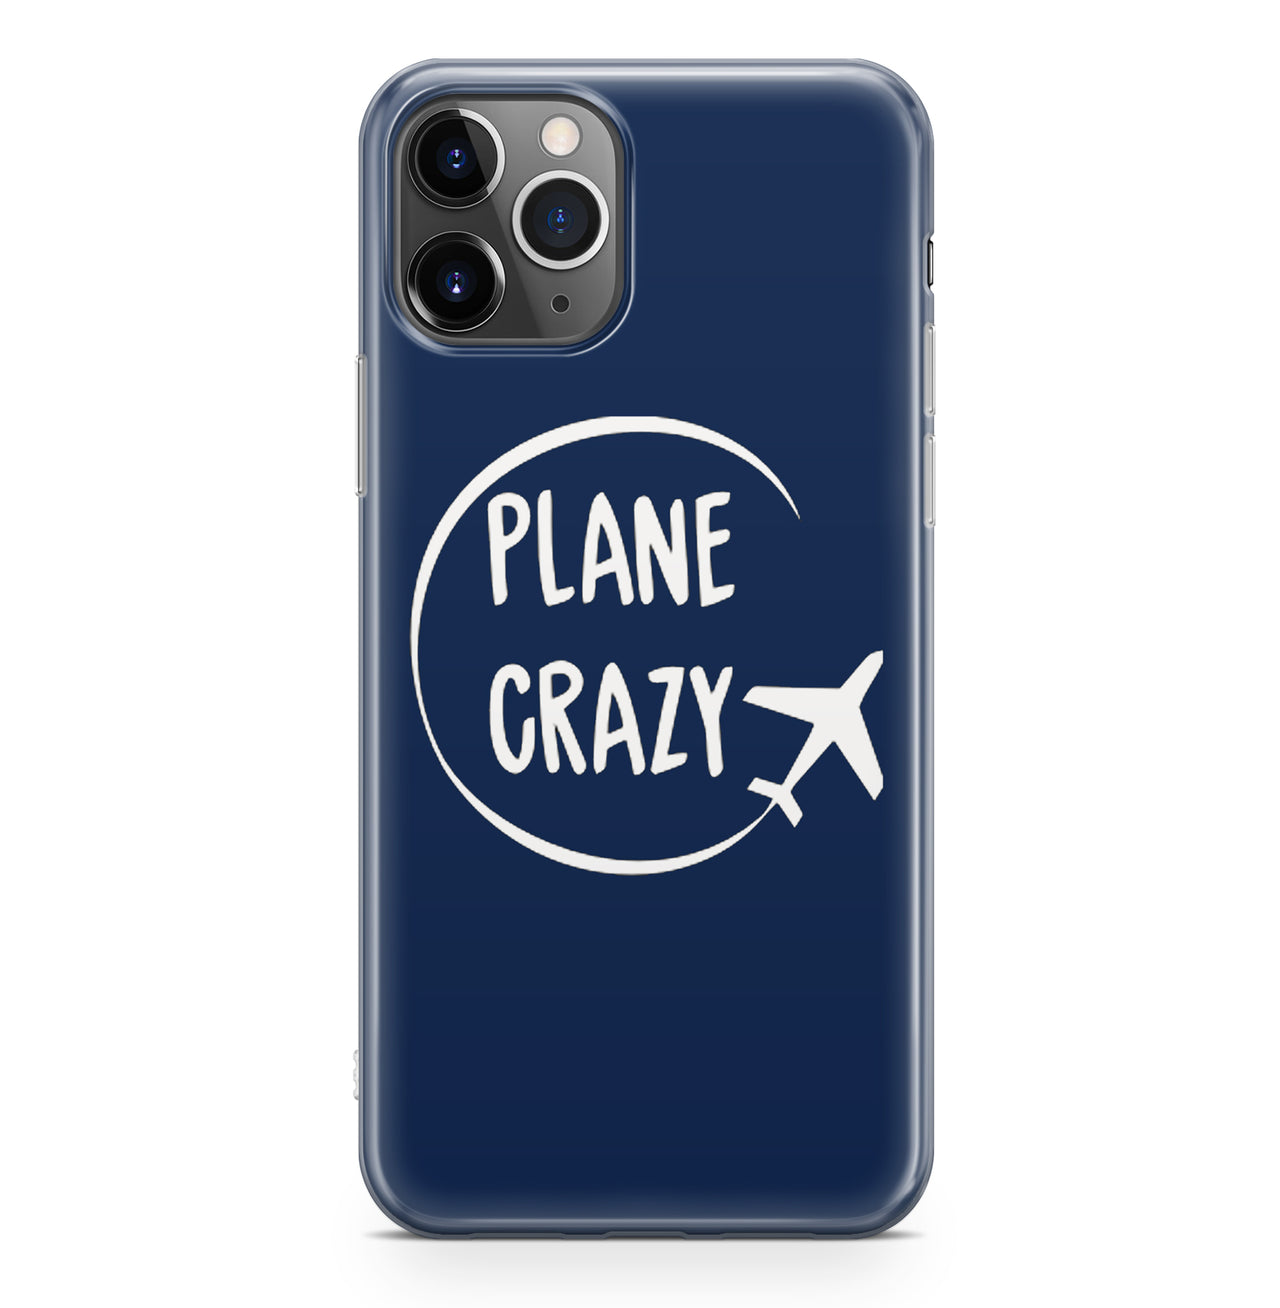 Plane Crazy Designed iPhone Cases